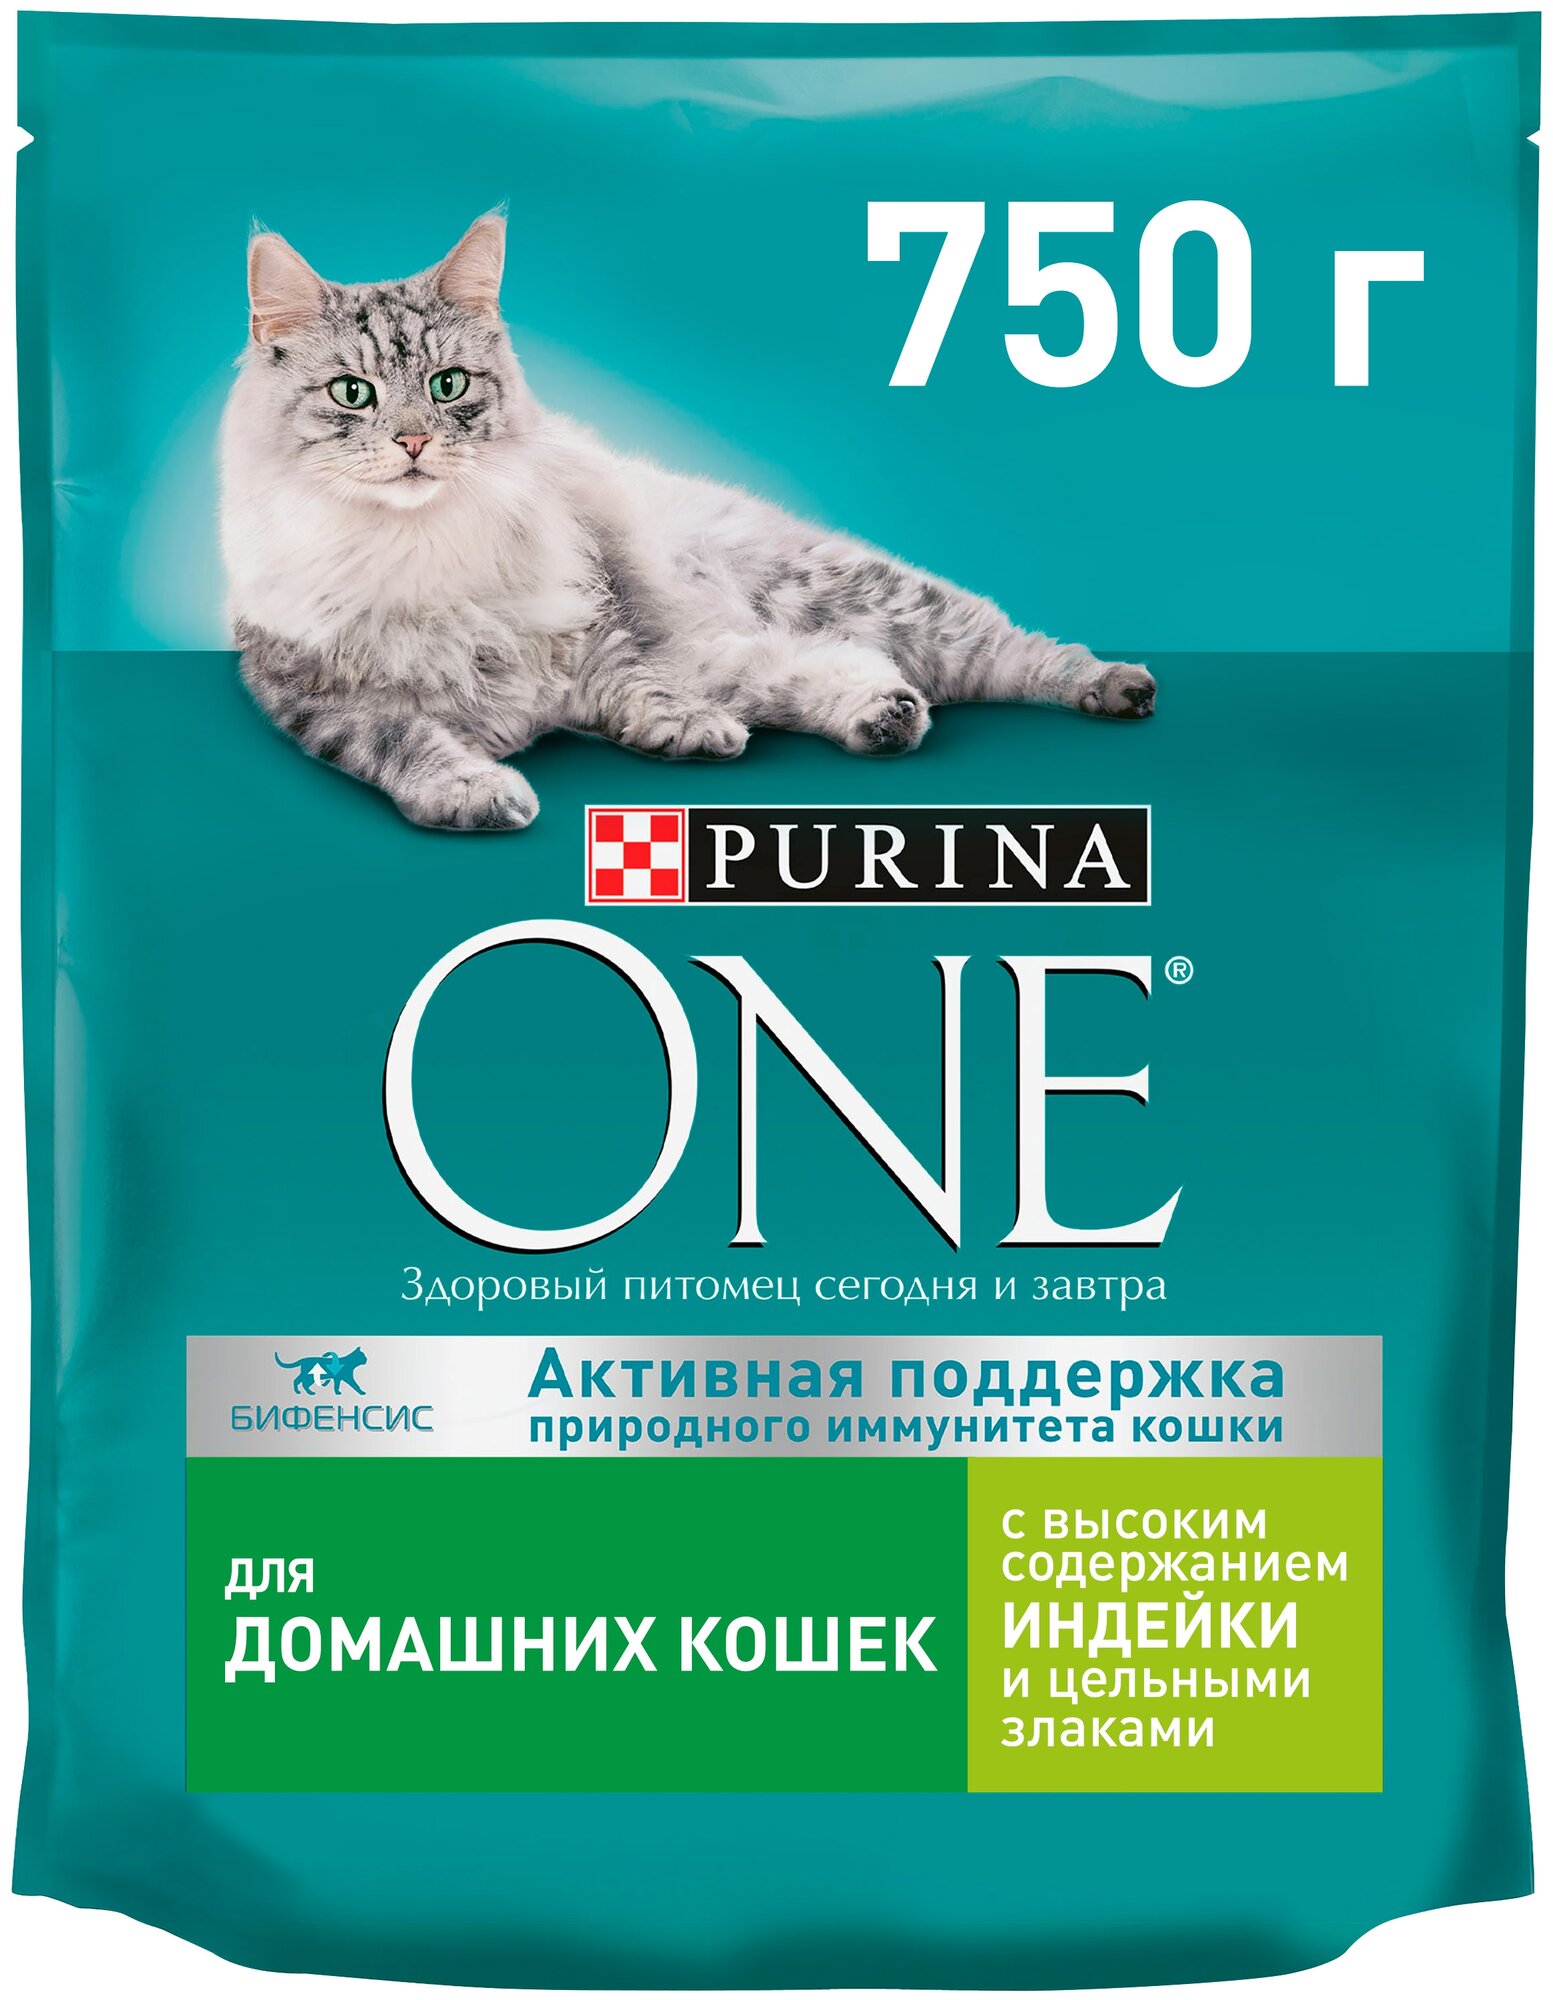 Purina One Сухой корм для домашних кошек с индейкой и злаками 1235322312397656 0,75 кг 37498 (2 шт)